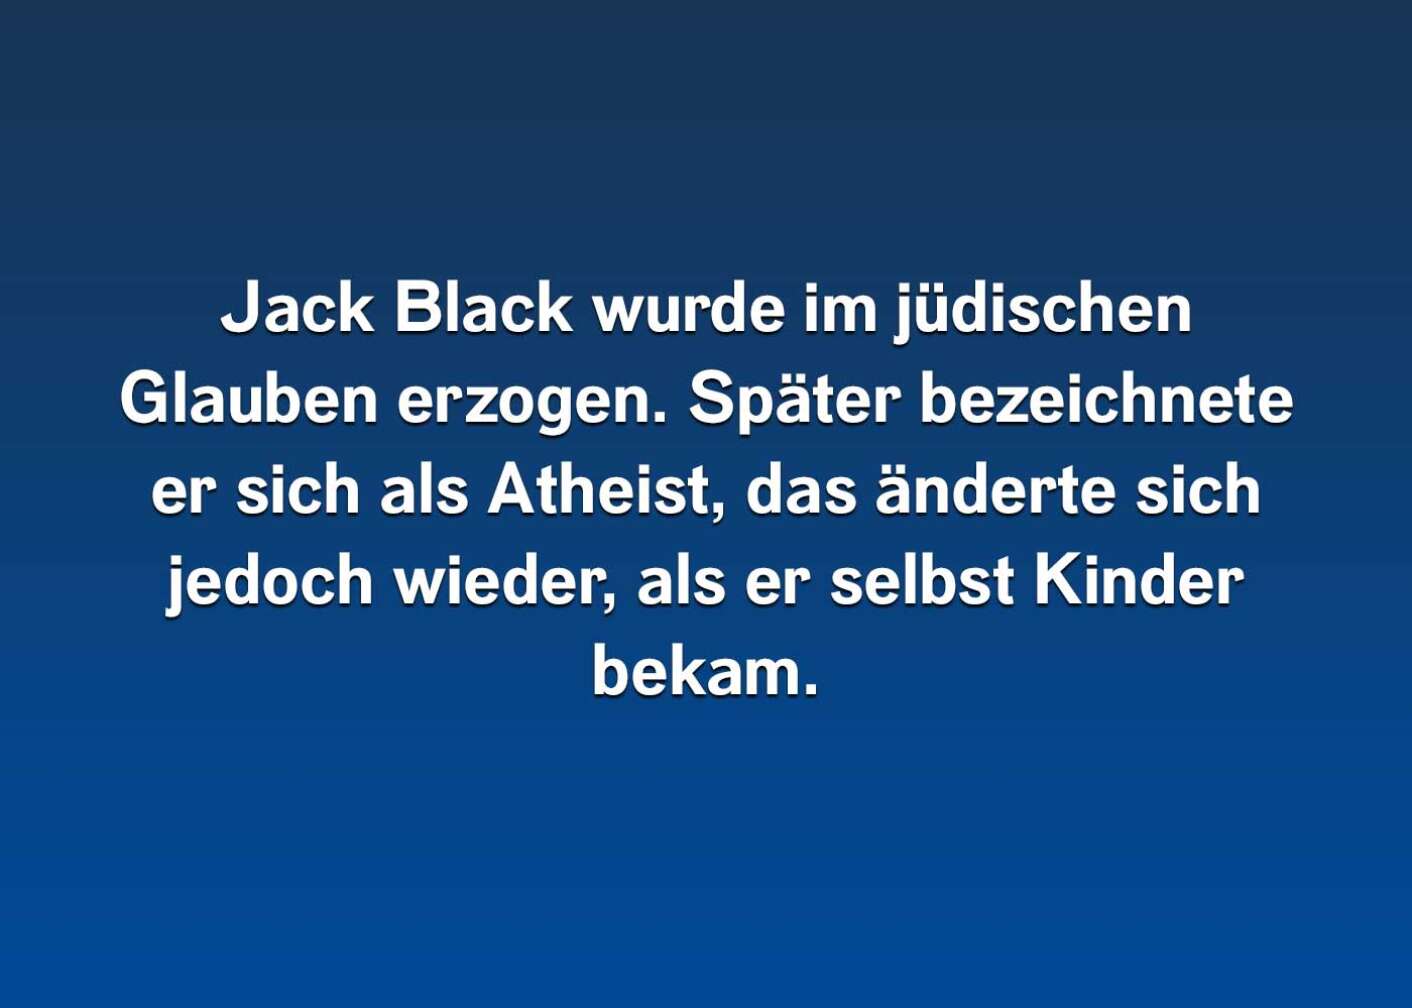 10 Fakten über Jack Black (4)